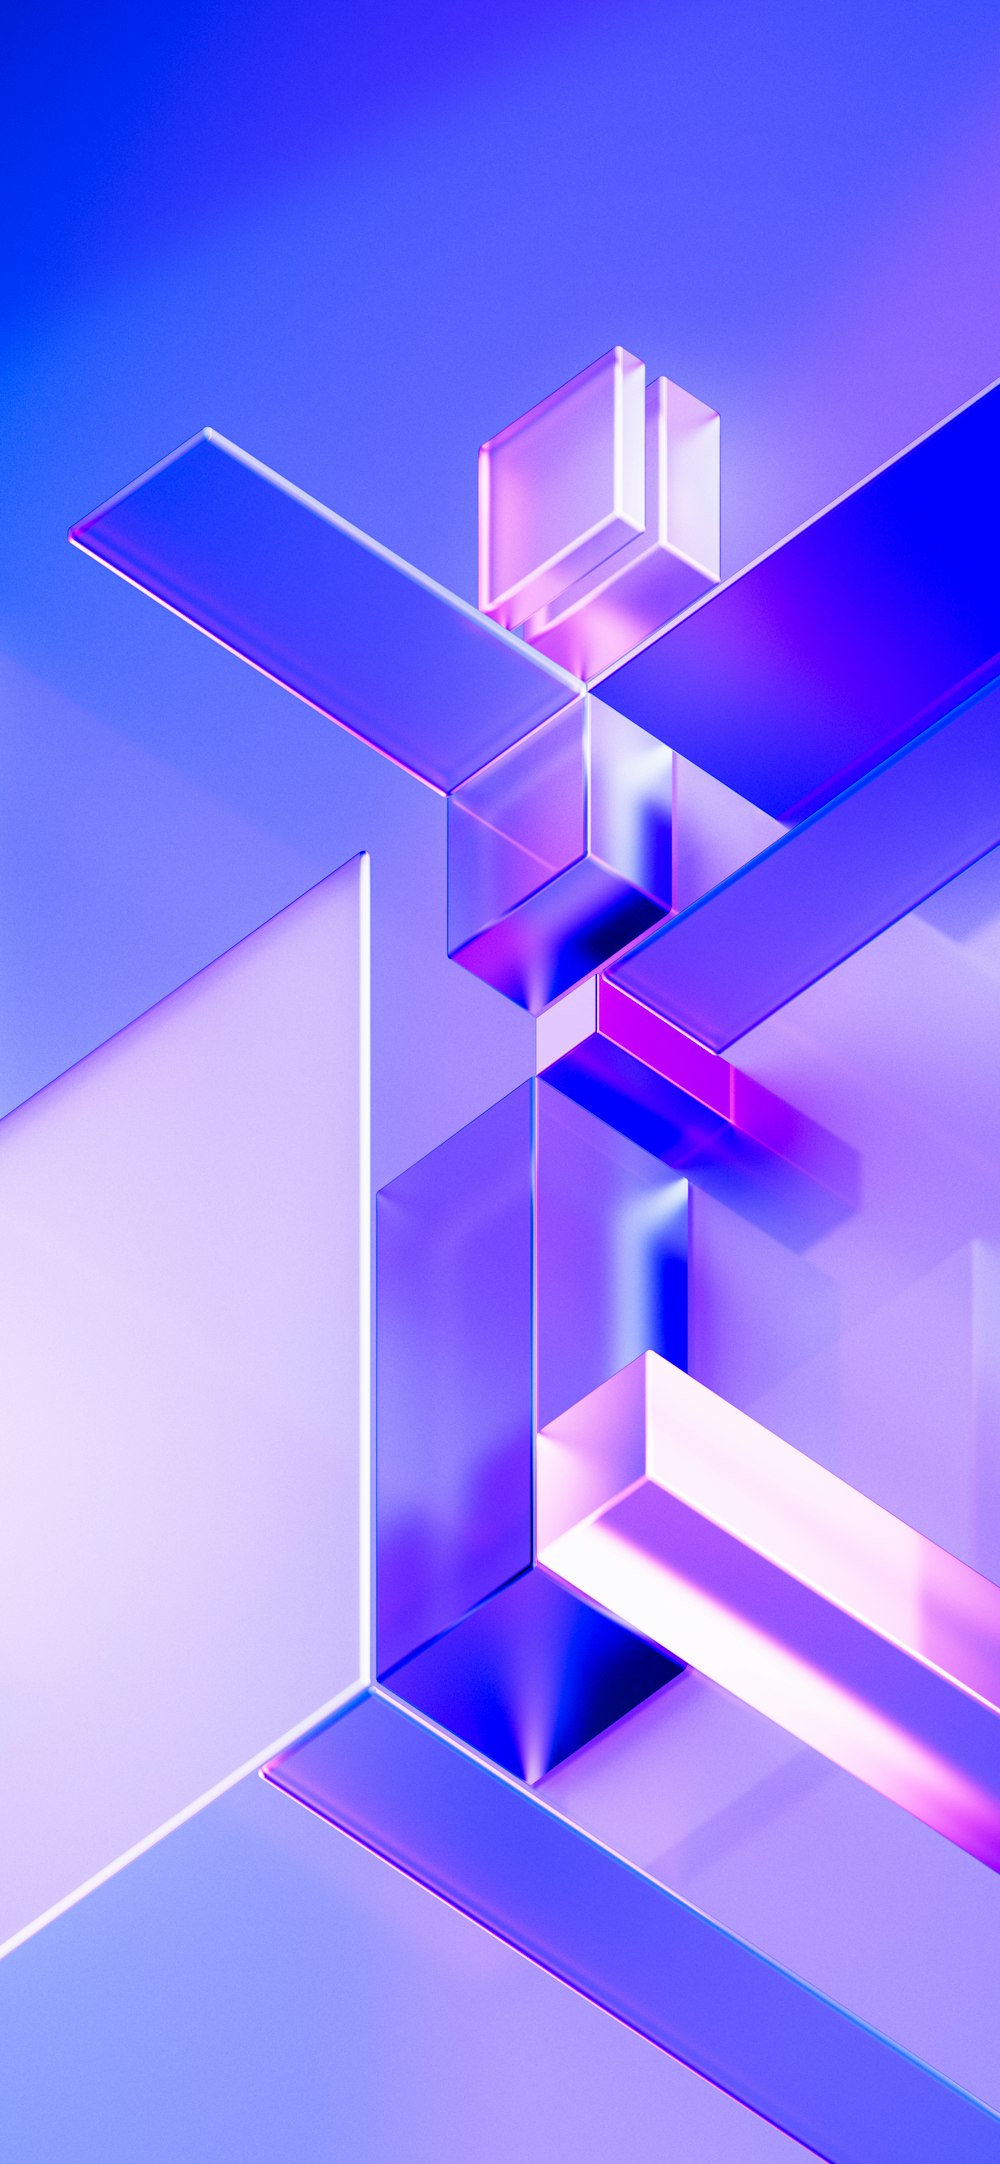 Una imagen abstracta de un objeto púrpura y rosa